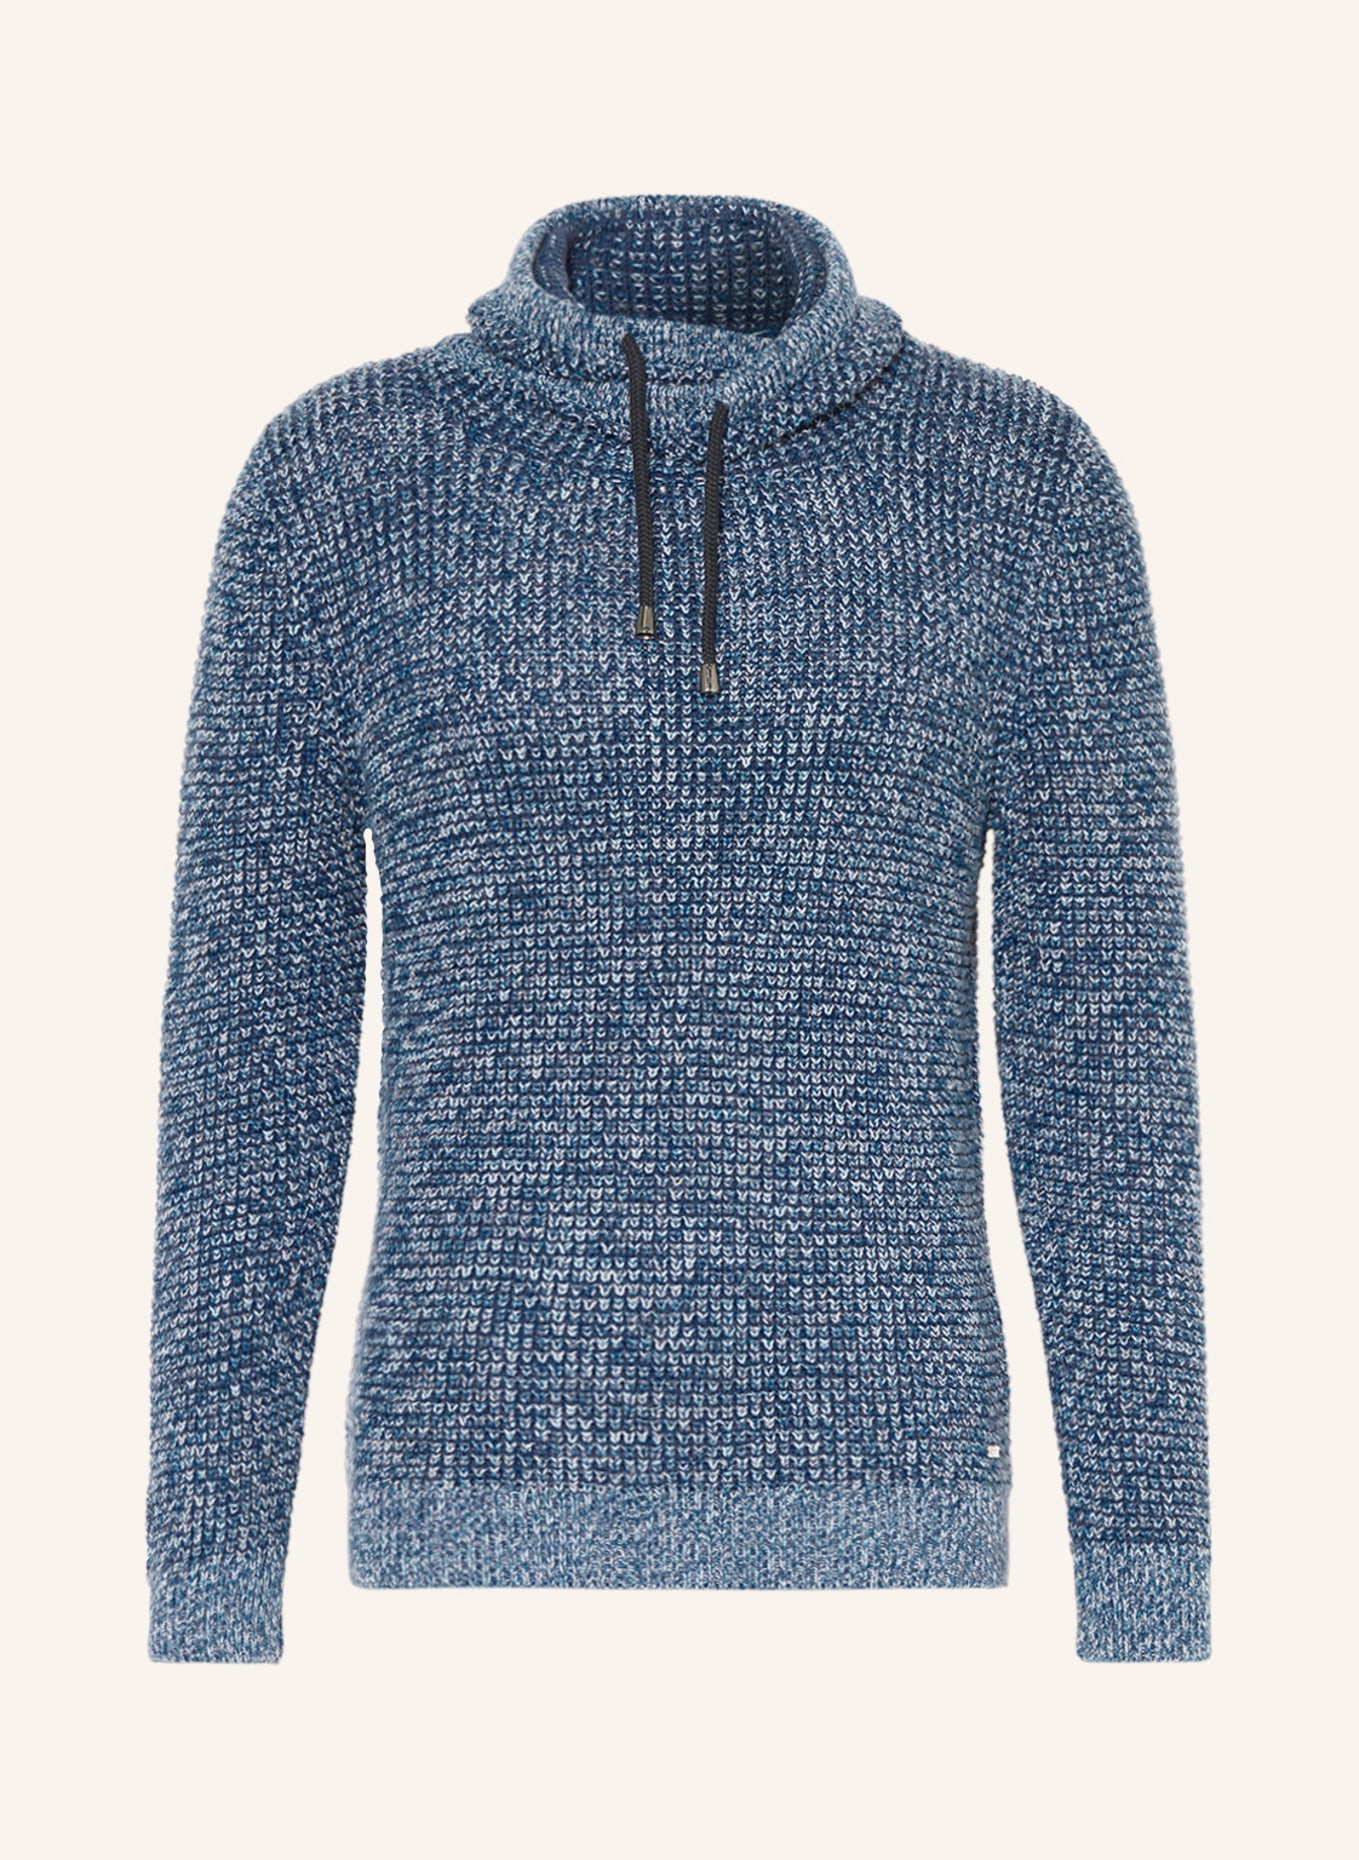 RAGMAN Knit hoodie, Color: BLUE (Image 1)